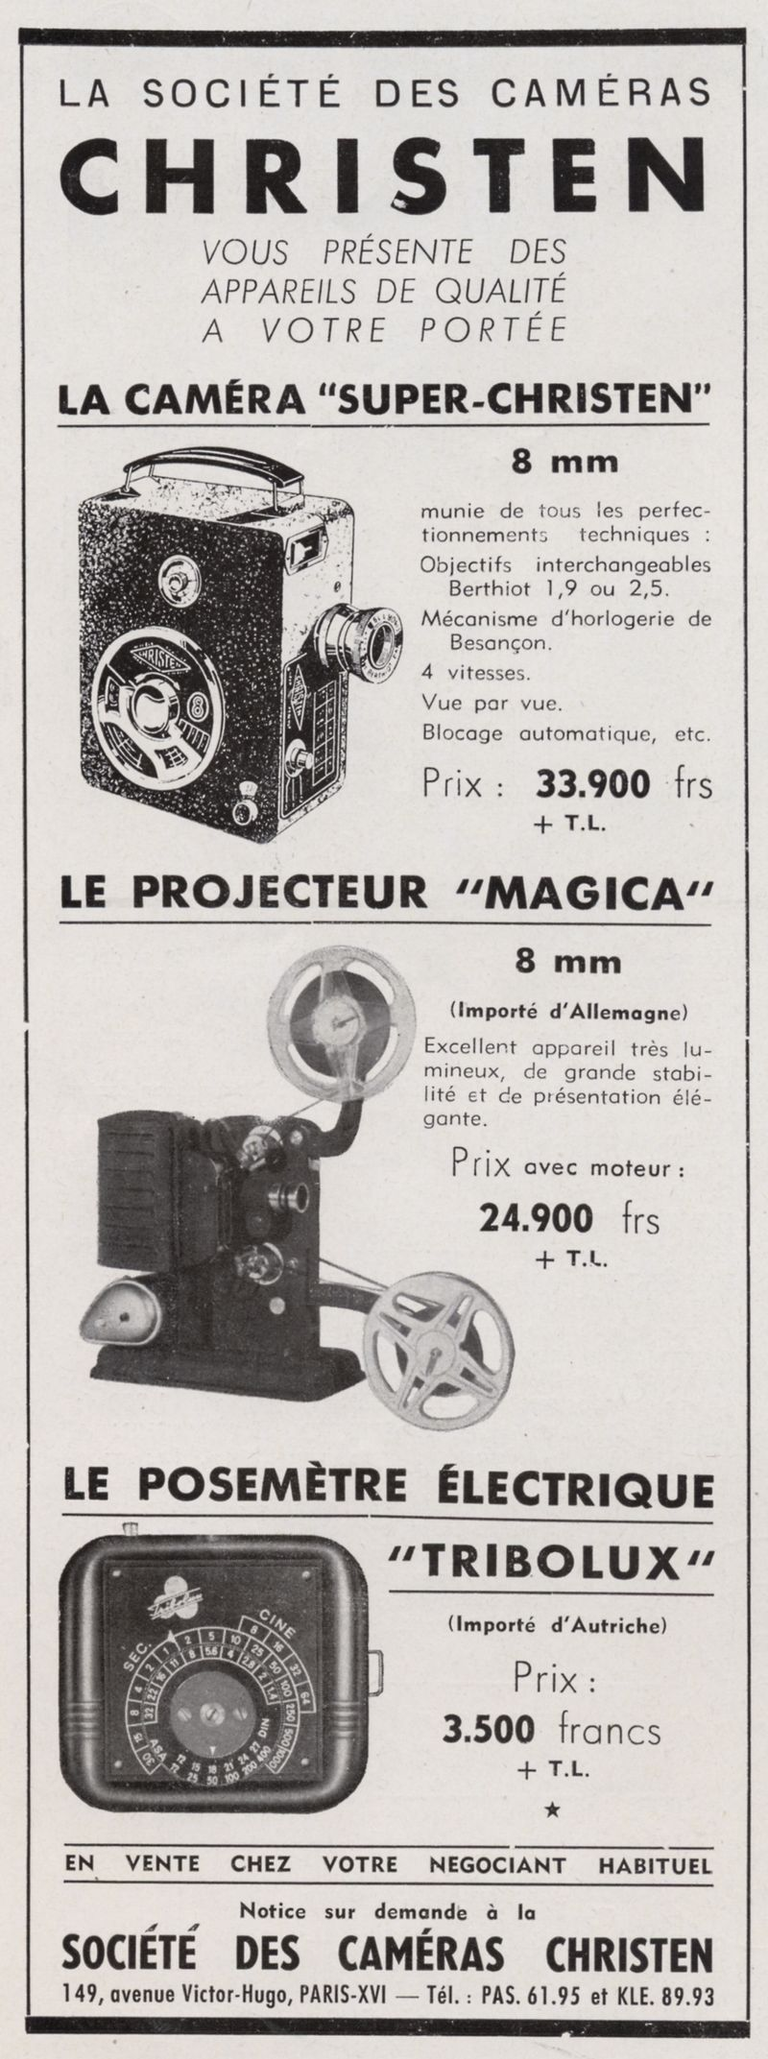 Christen - caméra Super Christen 8 mm - projecteur Magica 8 mm - posemètre électrique Tribolux - 1953